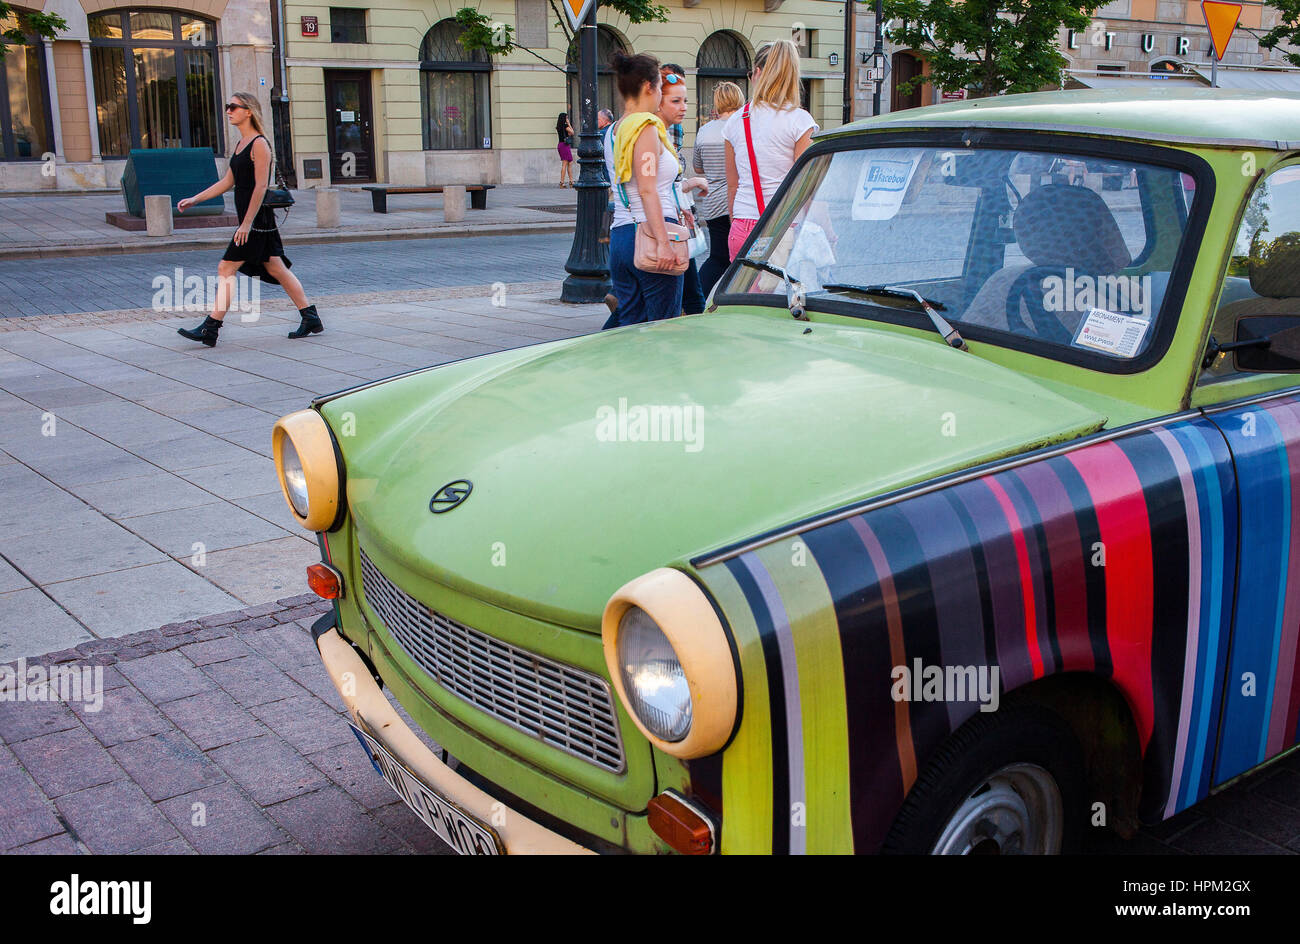 Trabant car, in Krakowskie Przedmiescie street, Warsaw, Poland Stock Photo